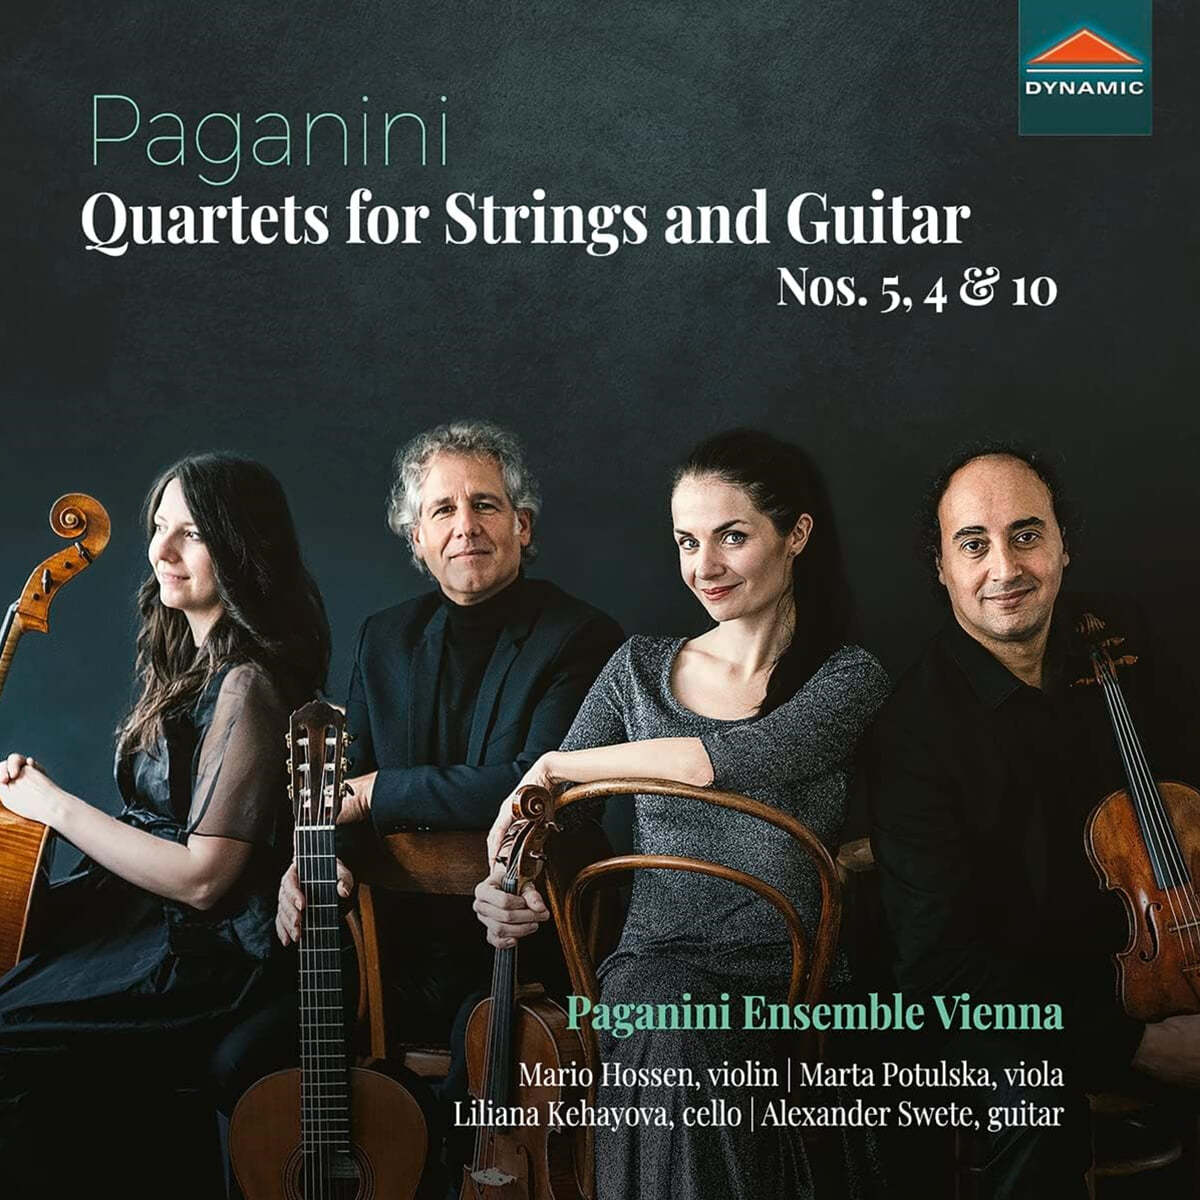 Paganini Ensemble Vienna 파가니니: 현과 기타를 위한 사중주 4, 5, 10번 (Paganini: Quartets for Strings and Guitar Nos. 5, 4 & 10) 